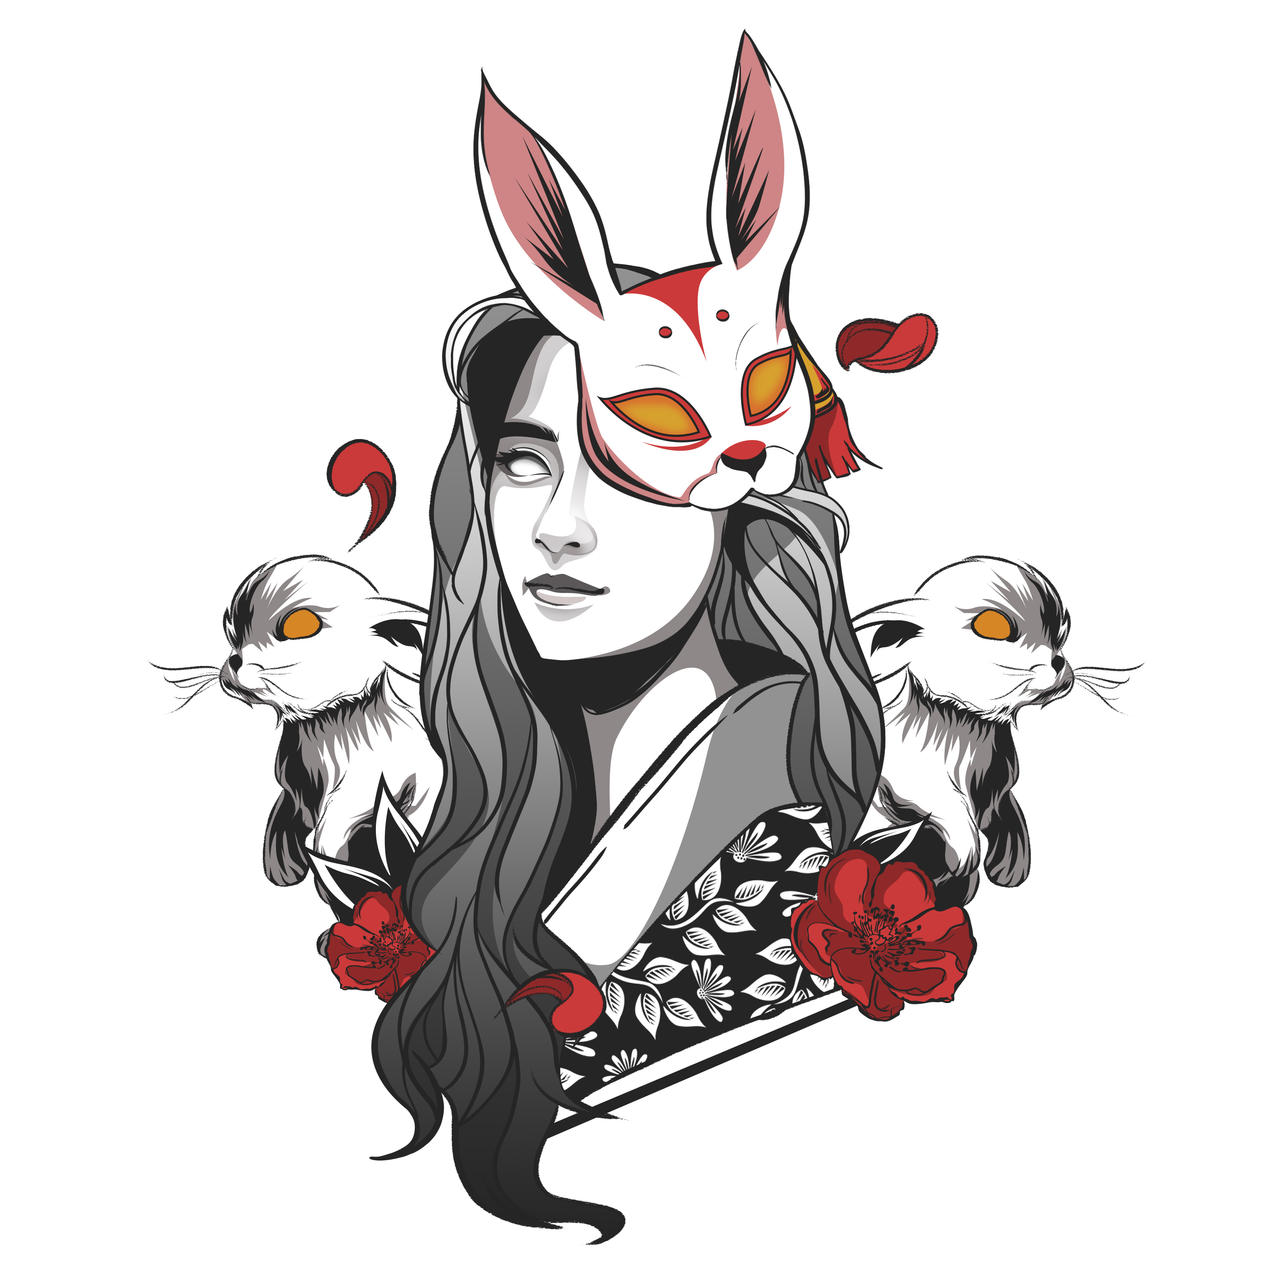 Bunny mask girl by wearevexel on DeviantArt